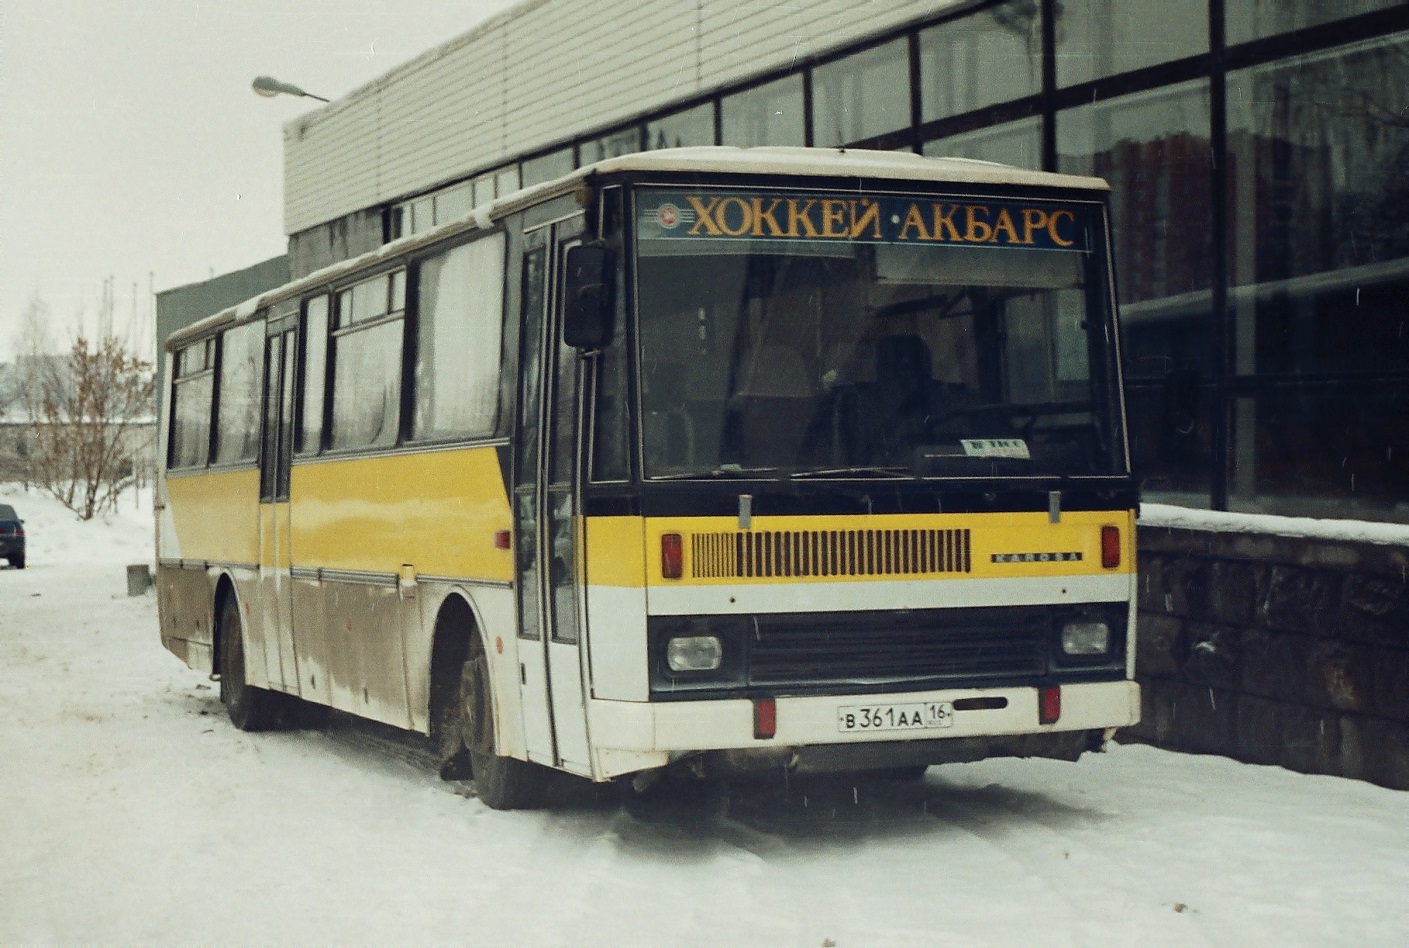 Kazan, Karosa C735 №: В 361 АА 16